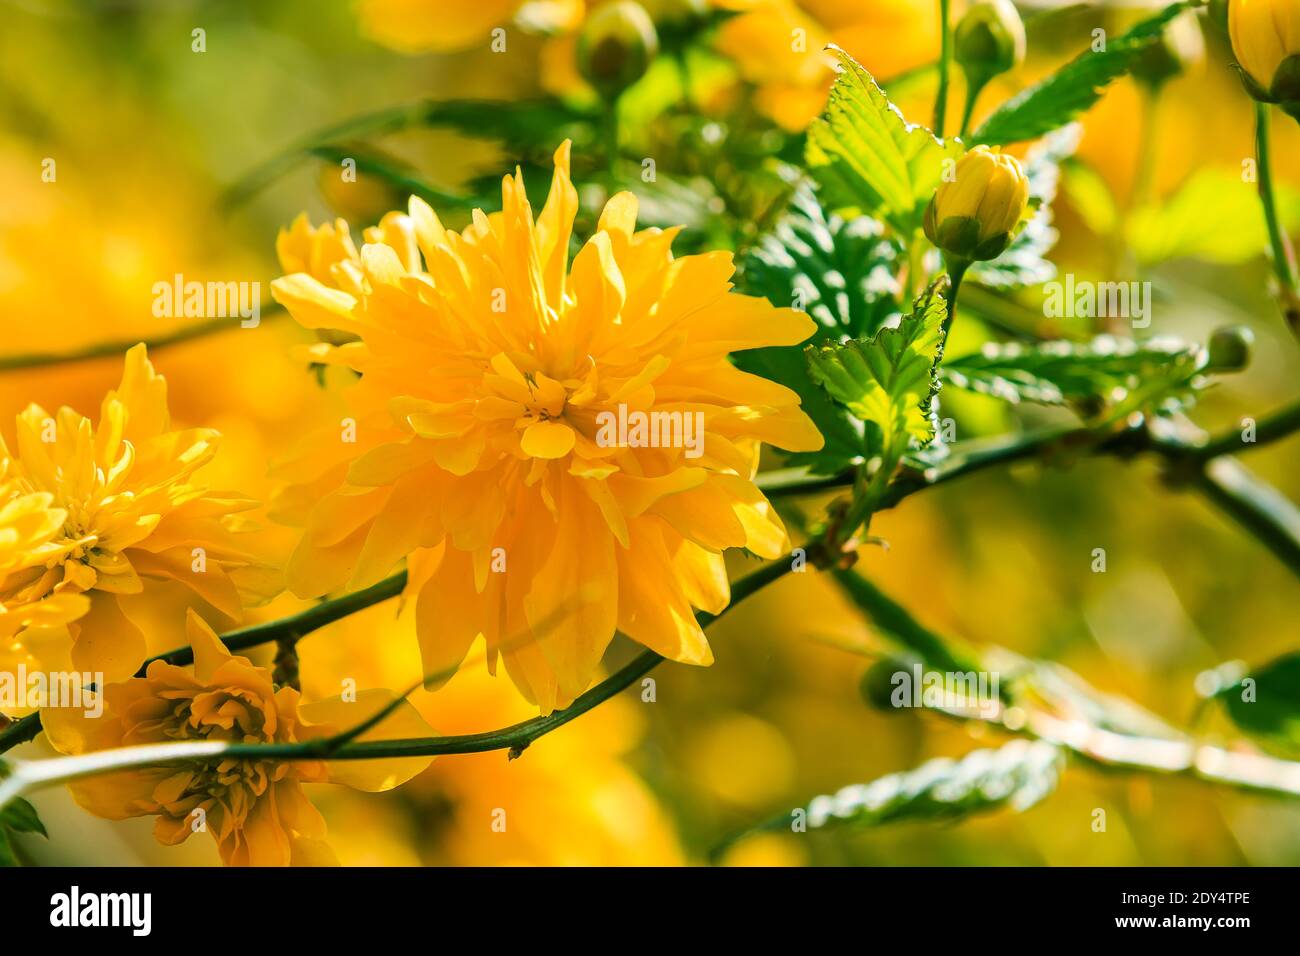 Fleur japonaise ranunculus au soleil. Photo détaillée de fleurs jaunes ouvertes dans un jardin sauvage. Fleurs sur un arbuste avec des feuilles vertes au printemps Banque D'Images